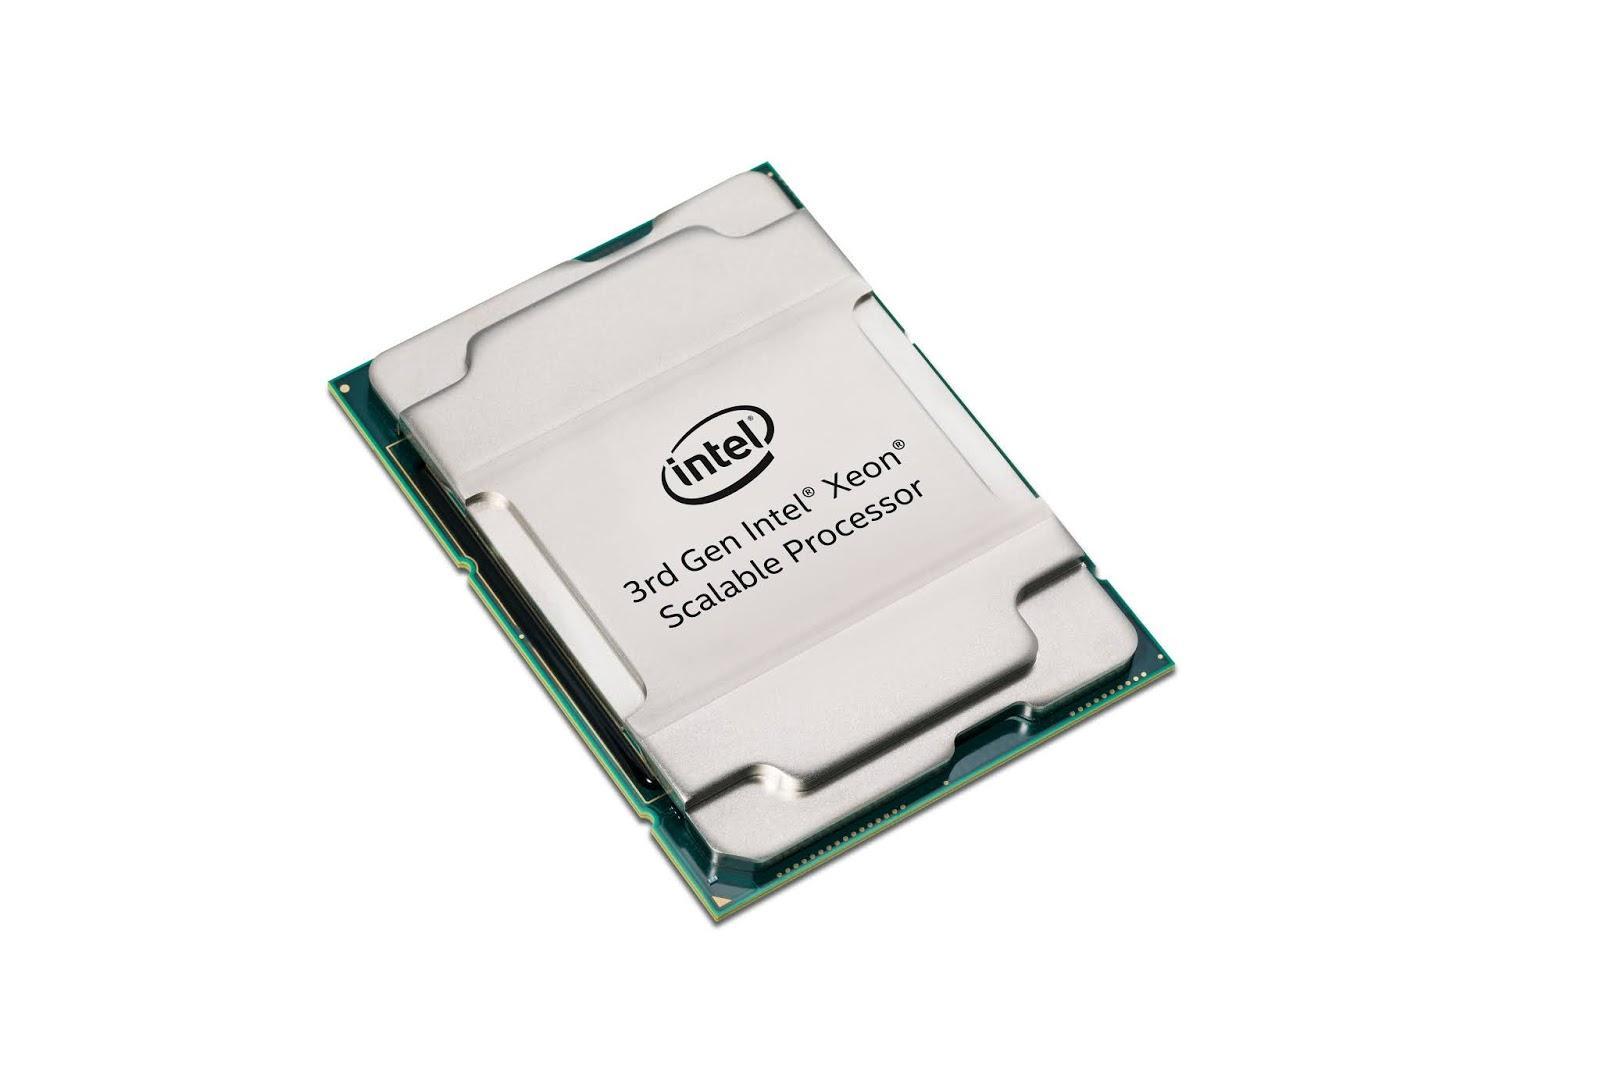 3rd Gen Intel Xeon प्रोसेसर निर्मित AI क्षमताओं के साथ लॉन्च किया गया